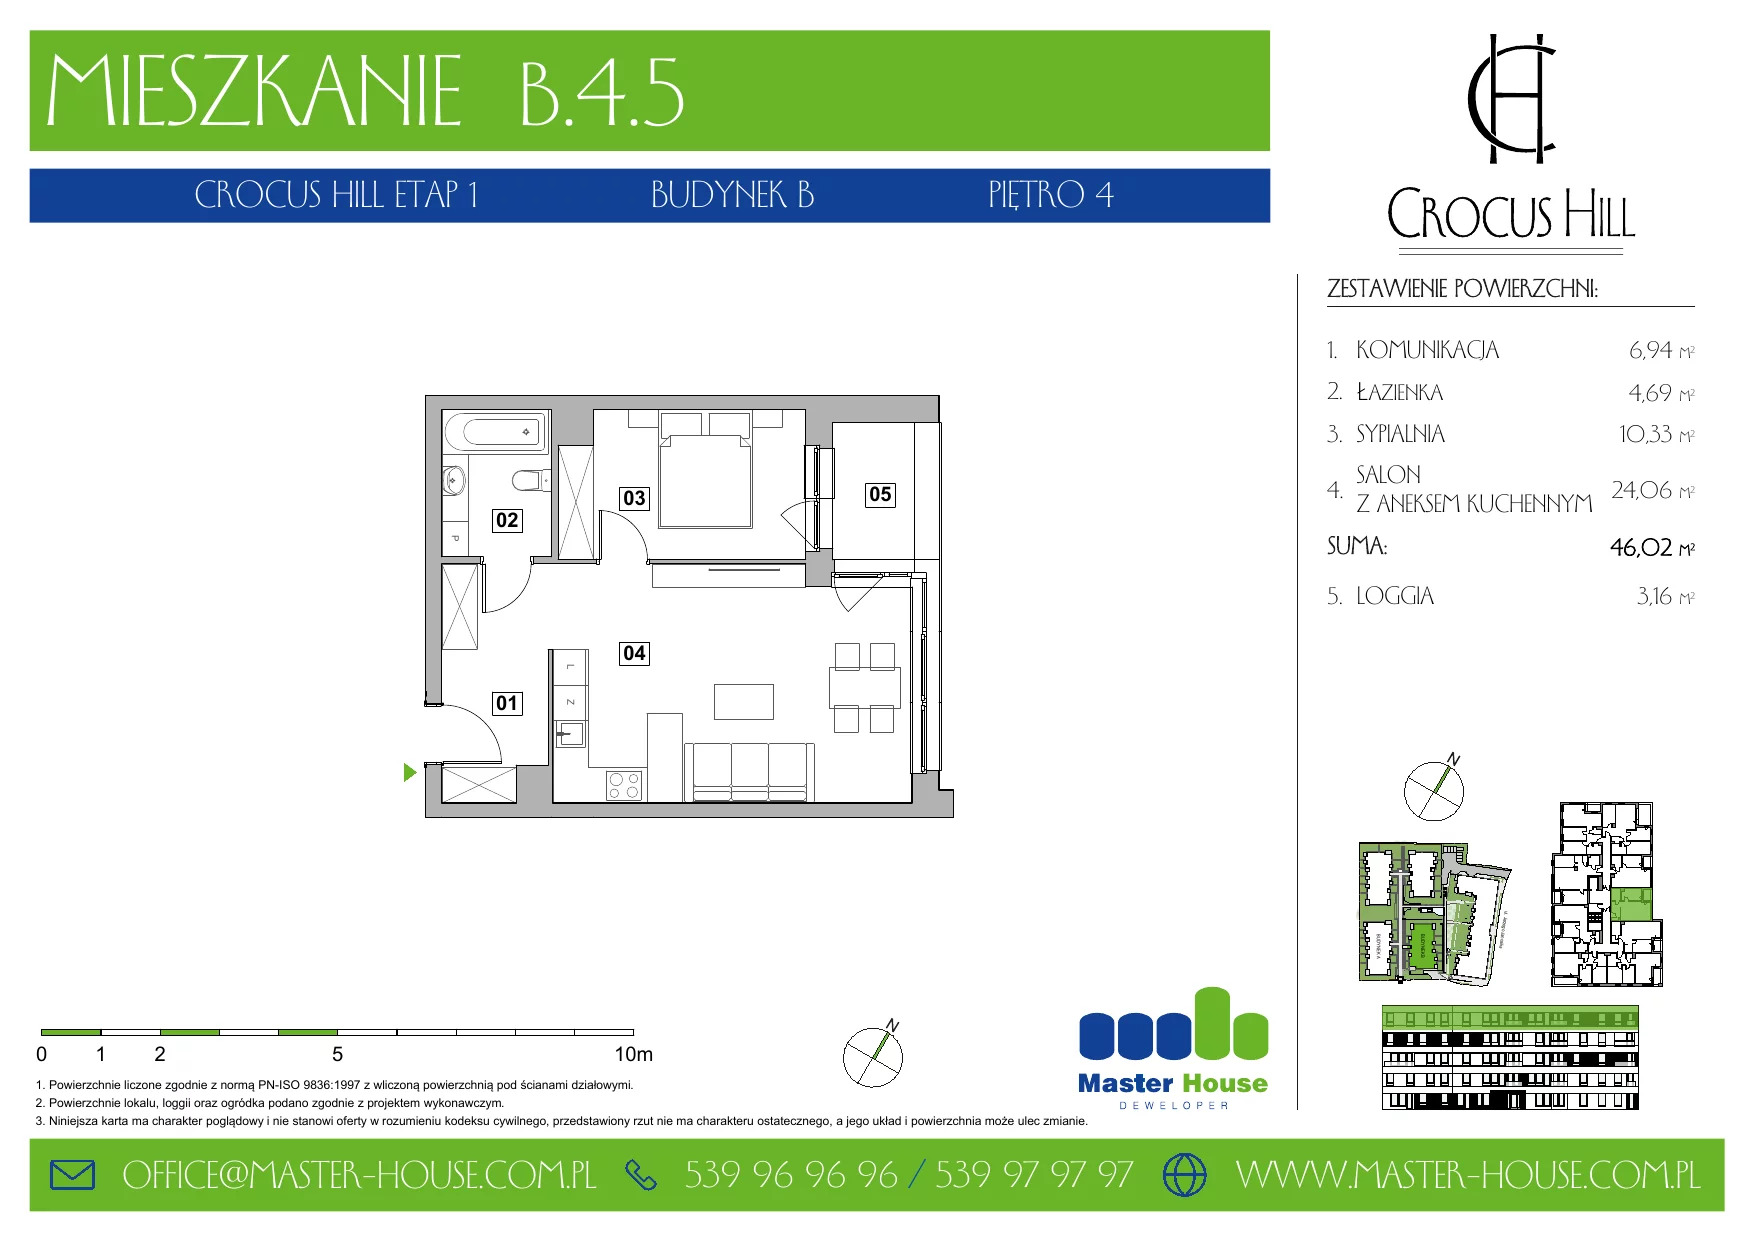 Mieszkanie 46,02 m², piętro 4, oferta nr B.4.5, Crocus Hill, Szczecin, Śródmieście, ul. Jerzego Janosika 2, 2A, 3, 3A